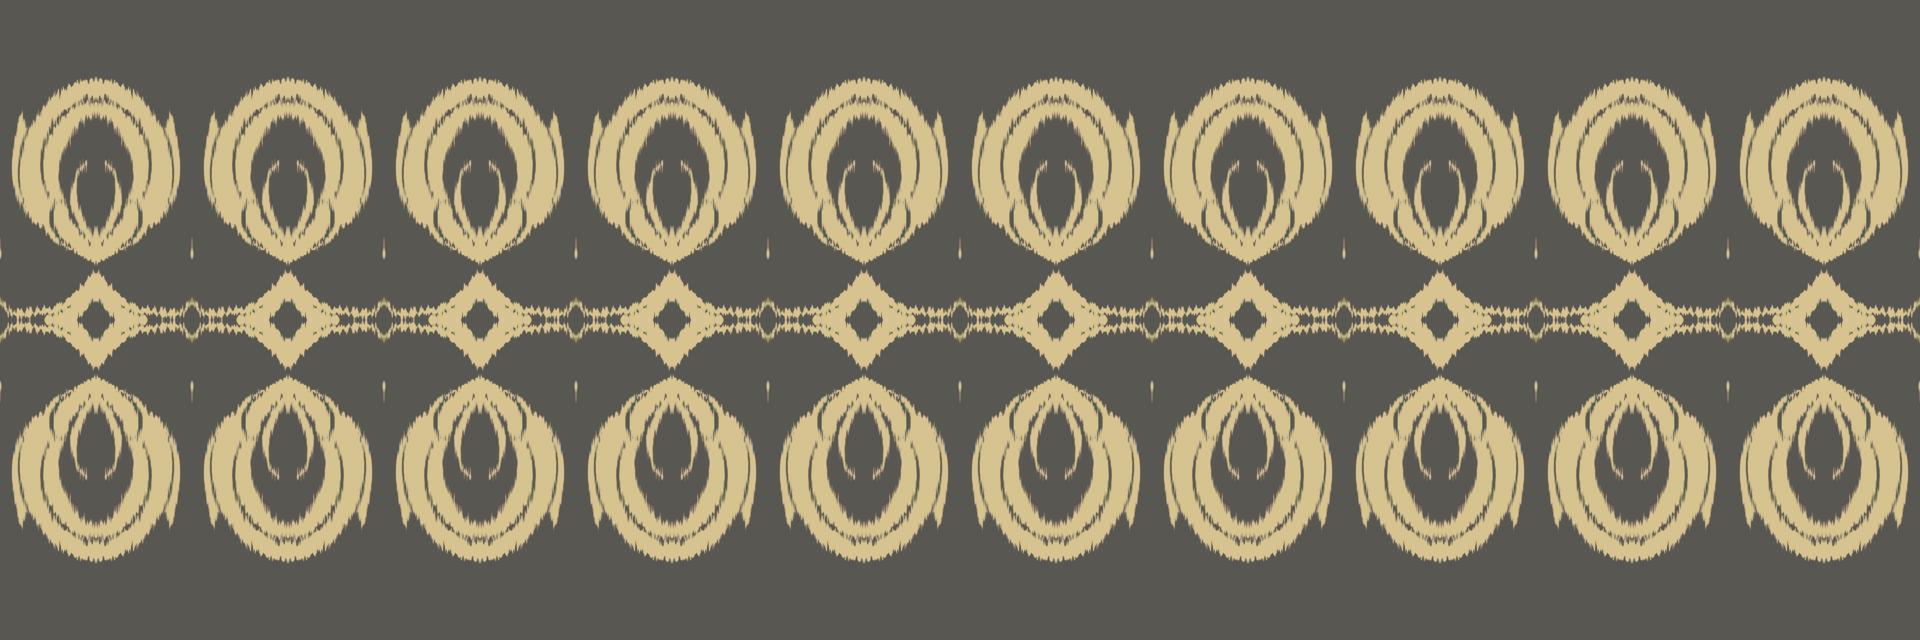 batik textil motivo ikat diseño de patrones sin fisuras diseño vectorial digital para imprimir sari kurti borde de tela símbolos de pincel muestras de algodón vector